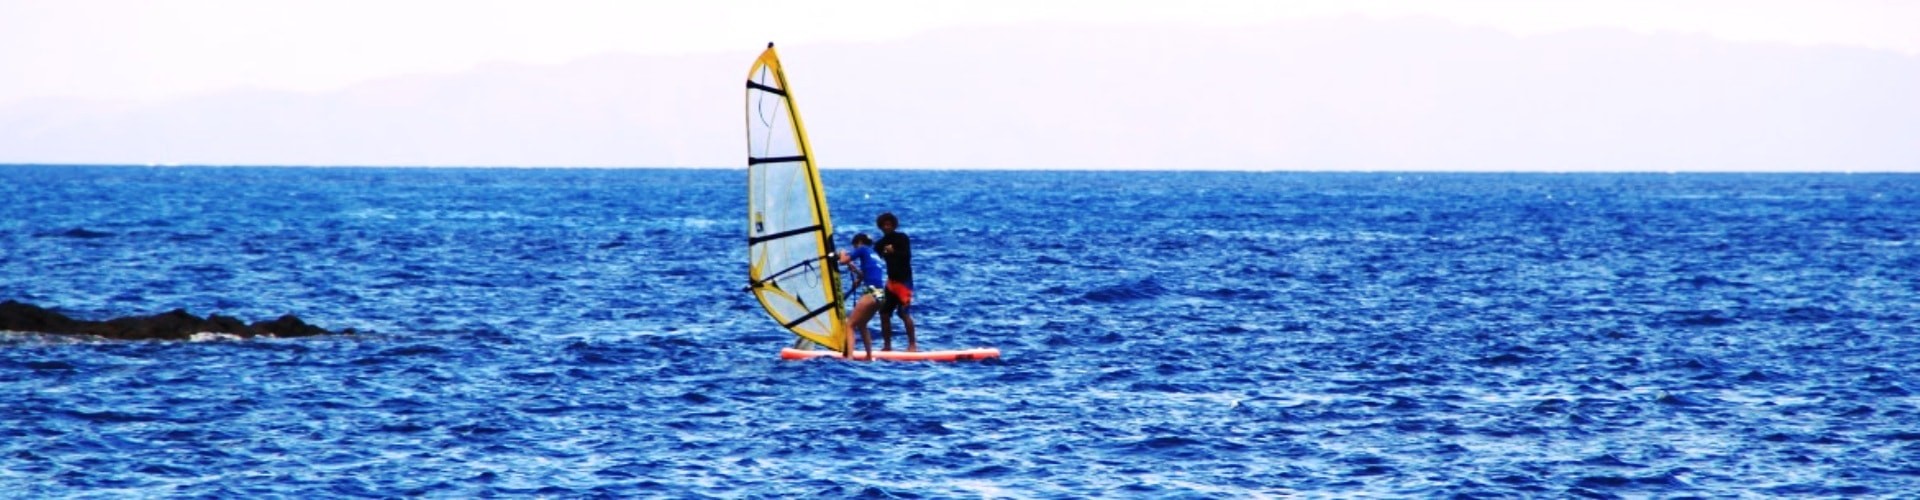 Windsurf in Madeira Island